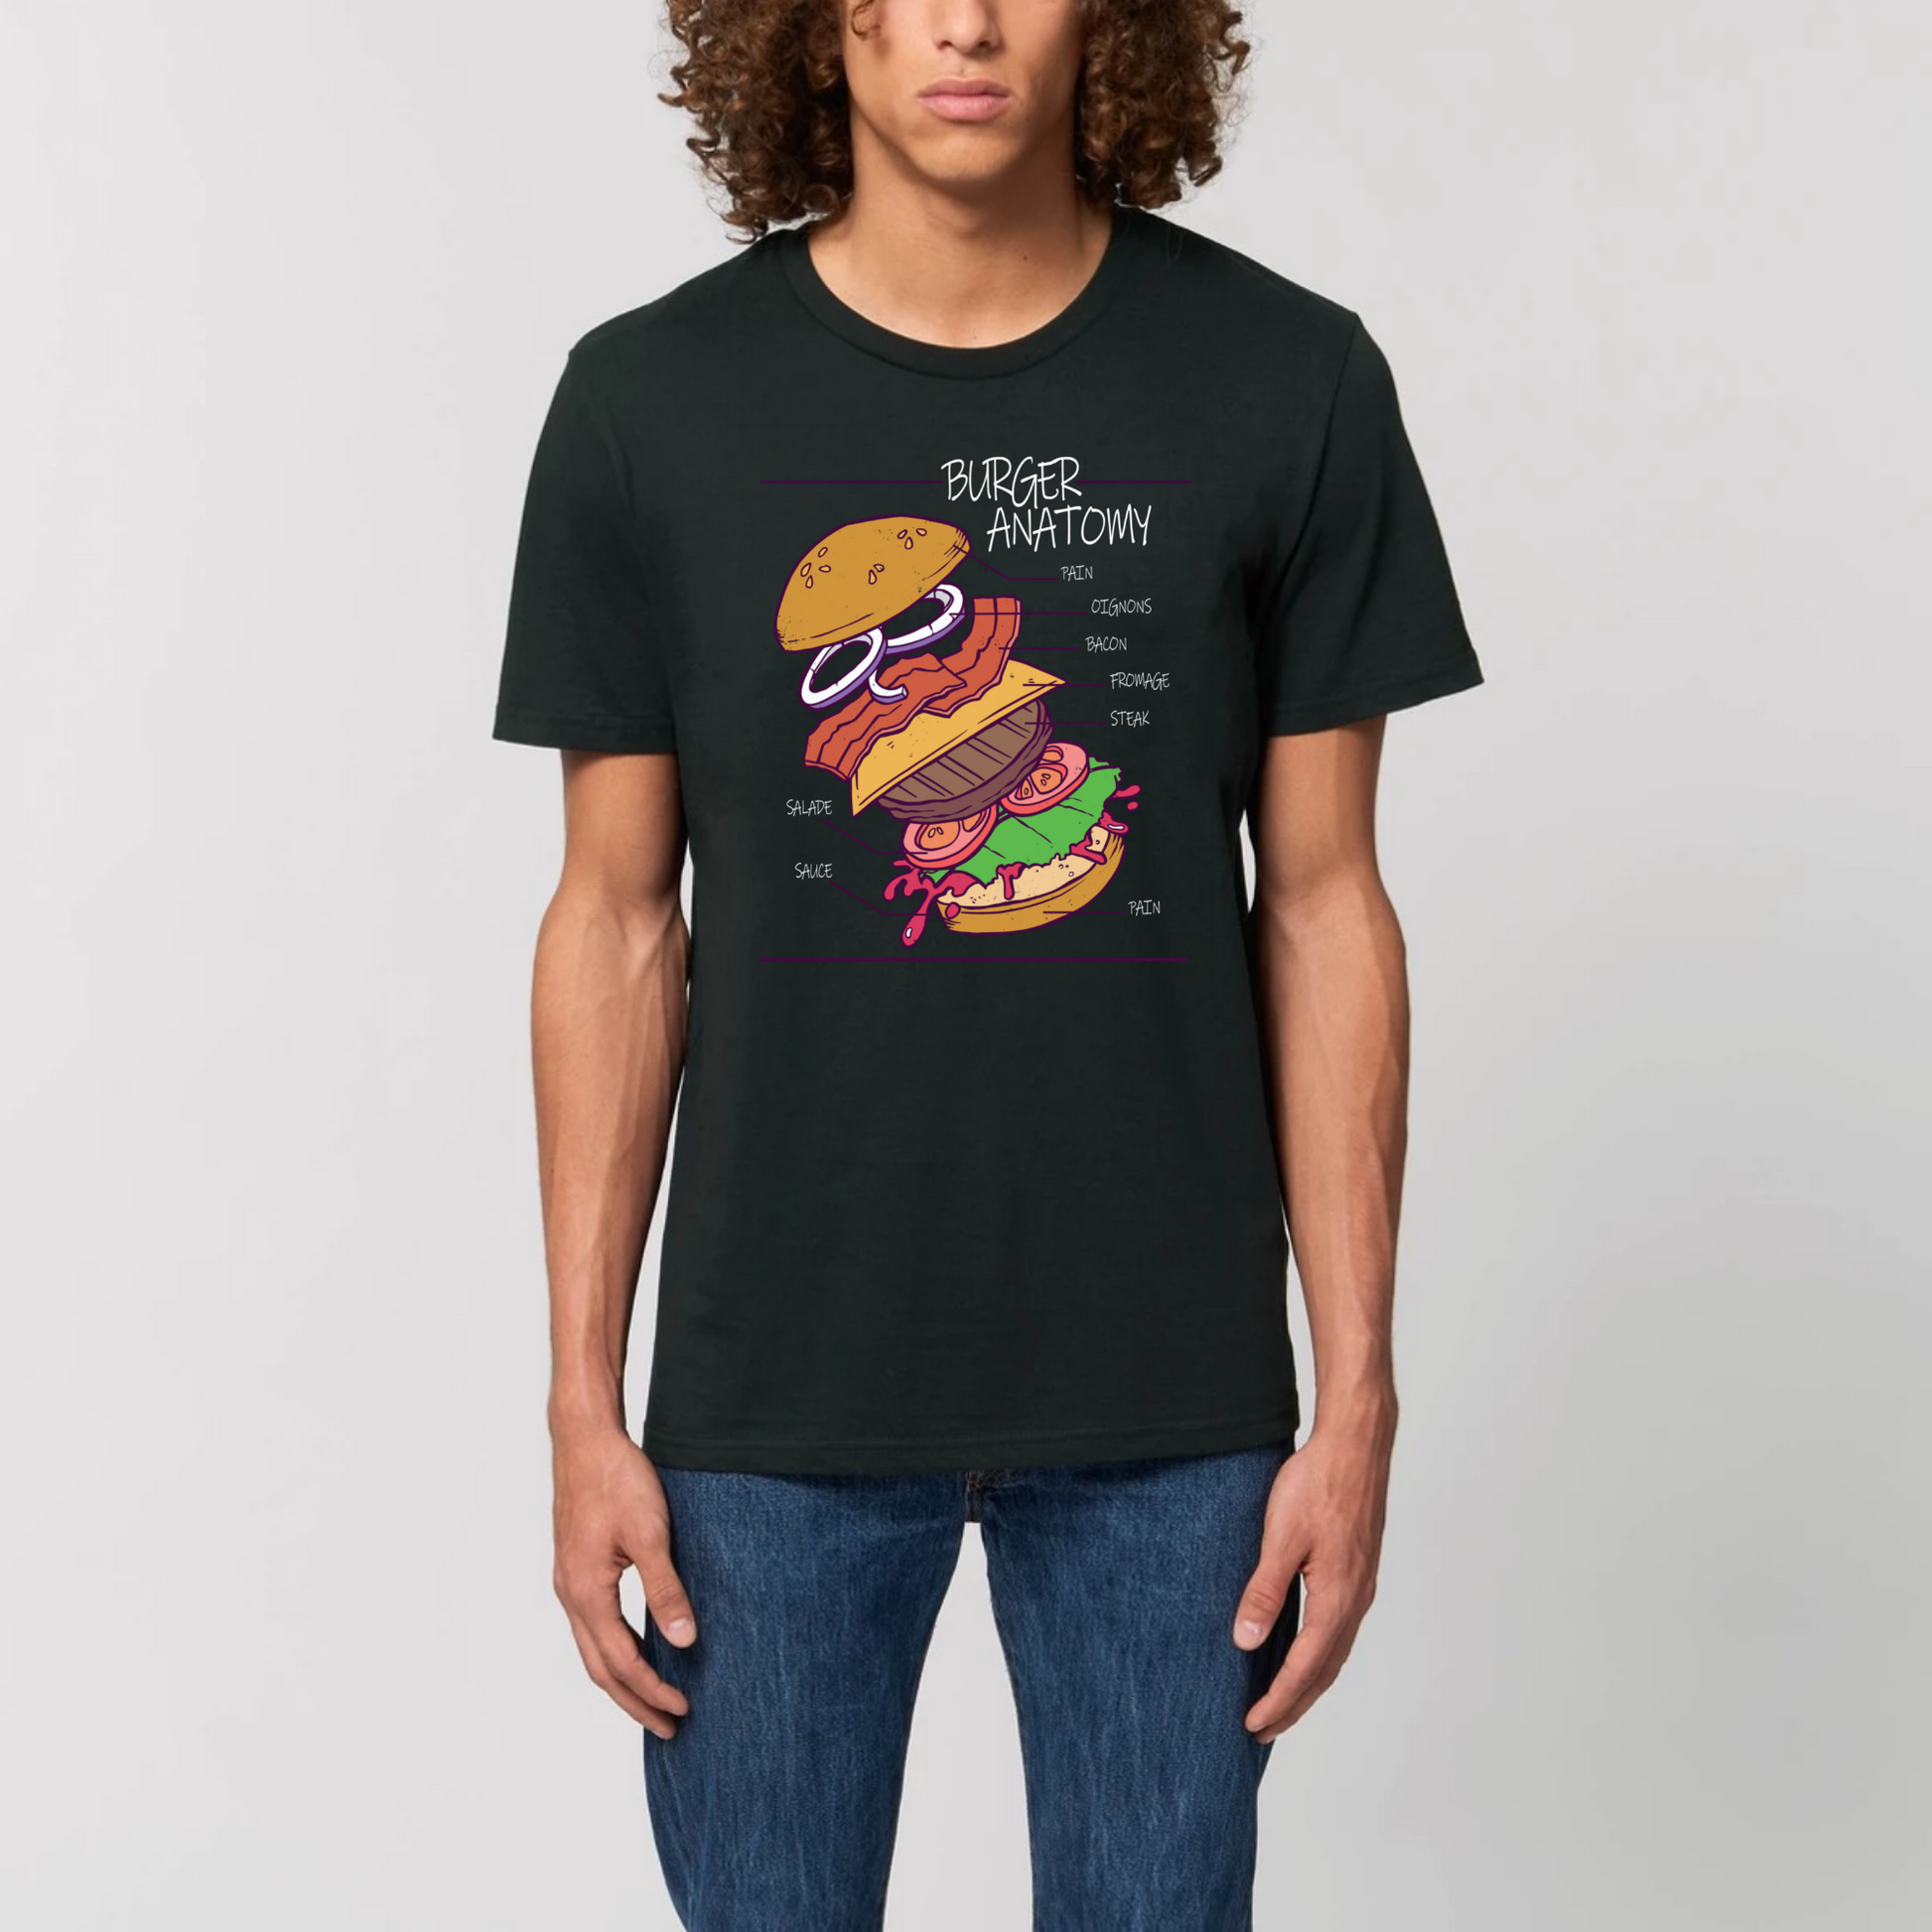 t-shirt burger anatomy en coton bio pour homme de T-French, t-shirt homme burger, t-shirt burger, tee shirt en coton bio homme, t-shirt homme humour, t-shirt humour nourriture, Noir